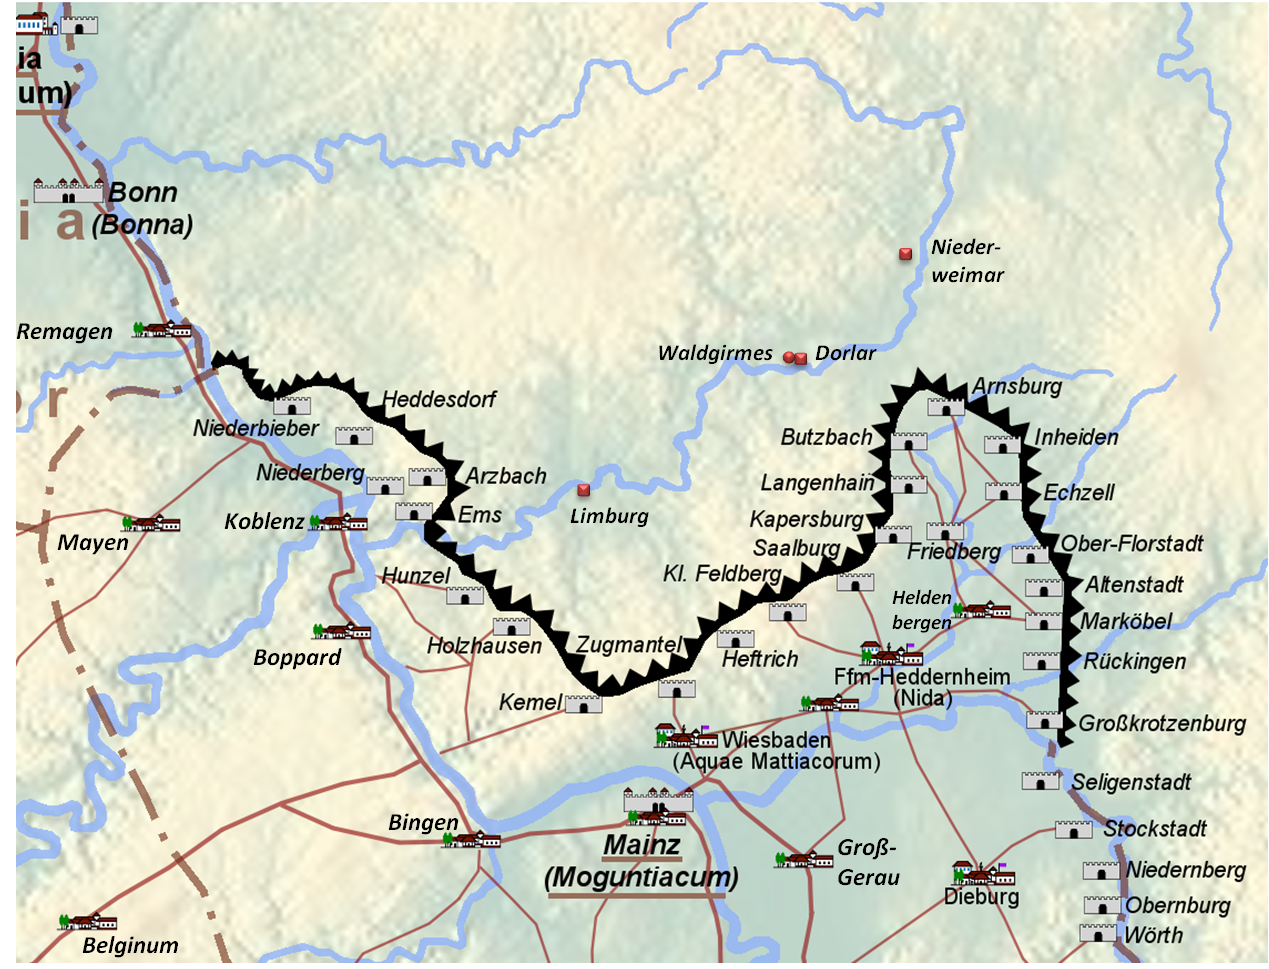 Die Lahn-Kastelle in Limburg, Dorlar, Nieder-Weimar und das römische Forum in Waldgirmes.